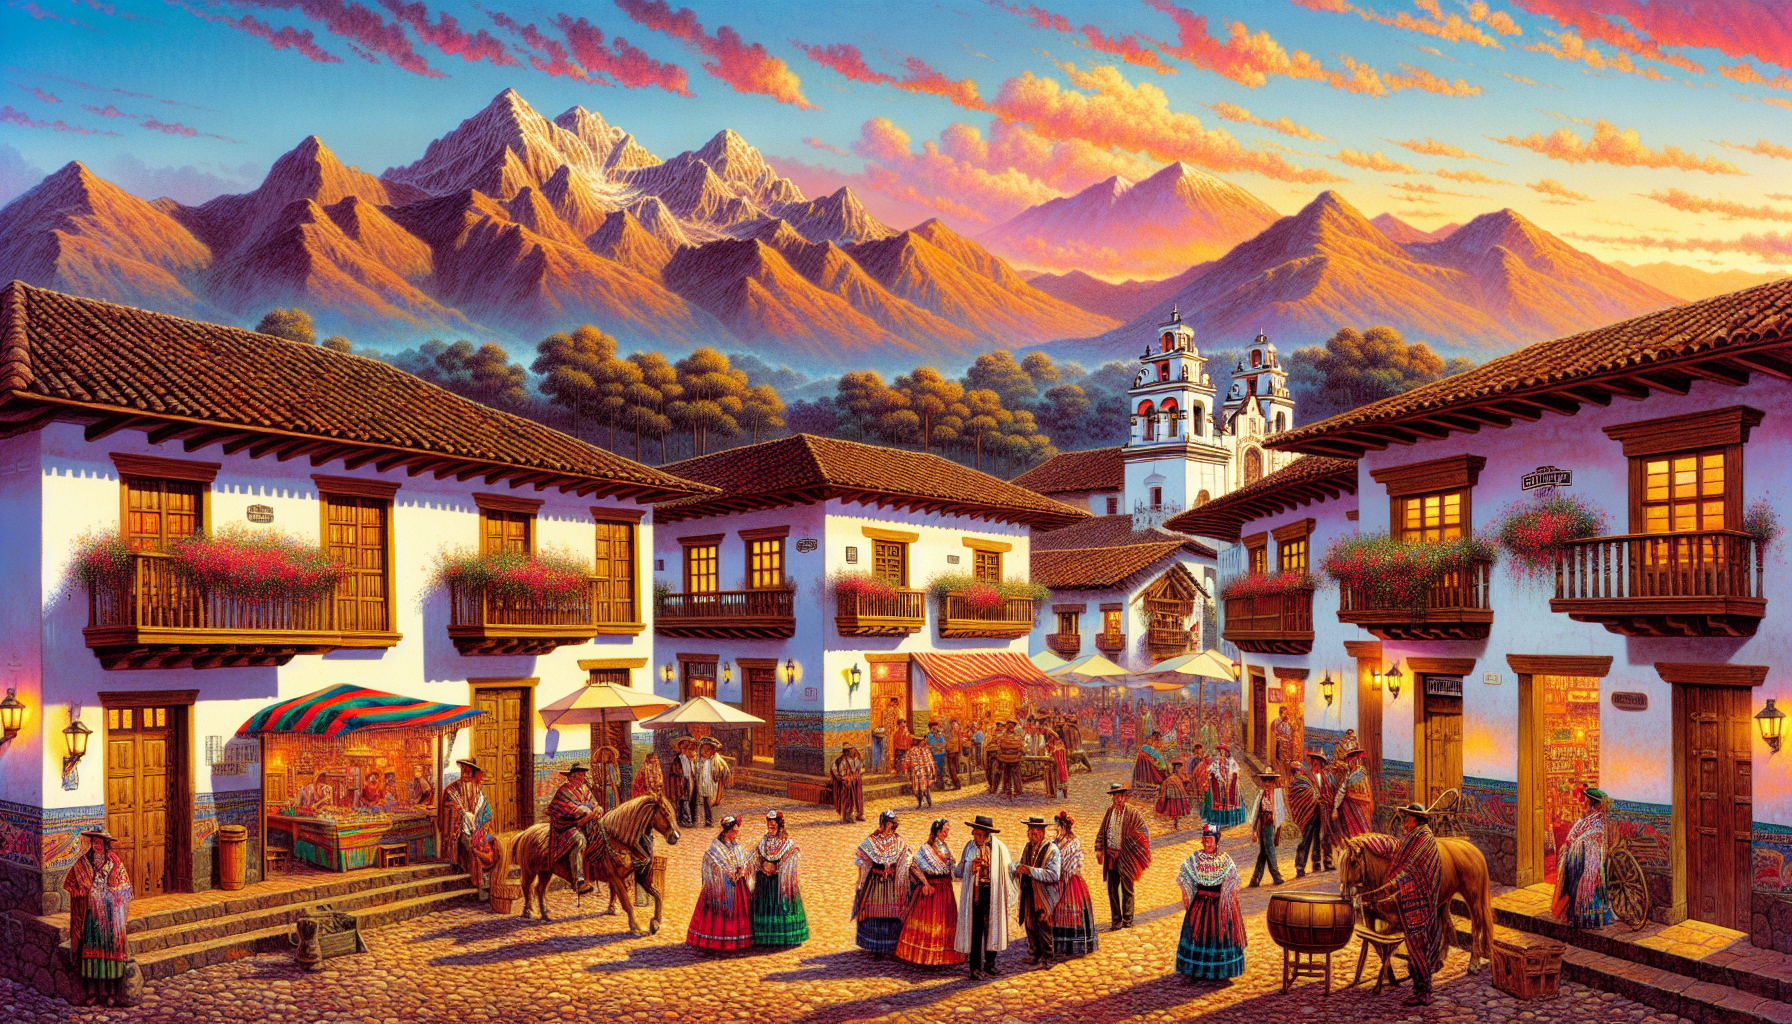 Un pintoresco pueblo de San Blas al atardecer, con sus encantadoras calles adoquinadas, casas coloniales con balcones de madera, y montañas majestuosas al fondo bajo un cielo pintado con colores cálid